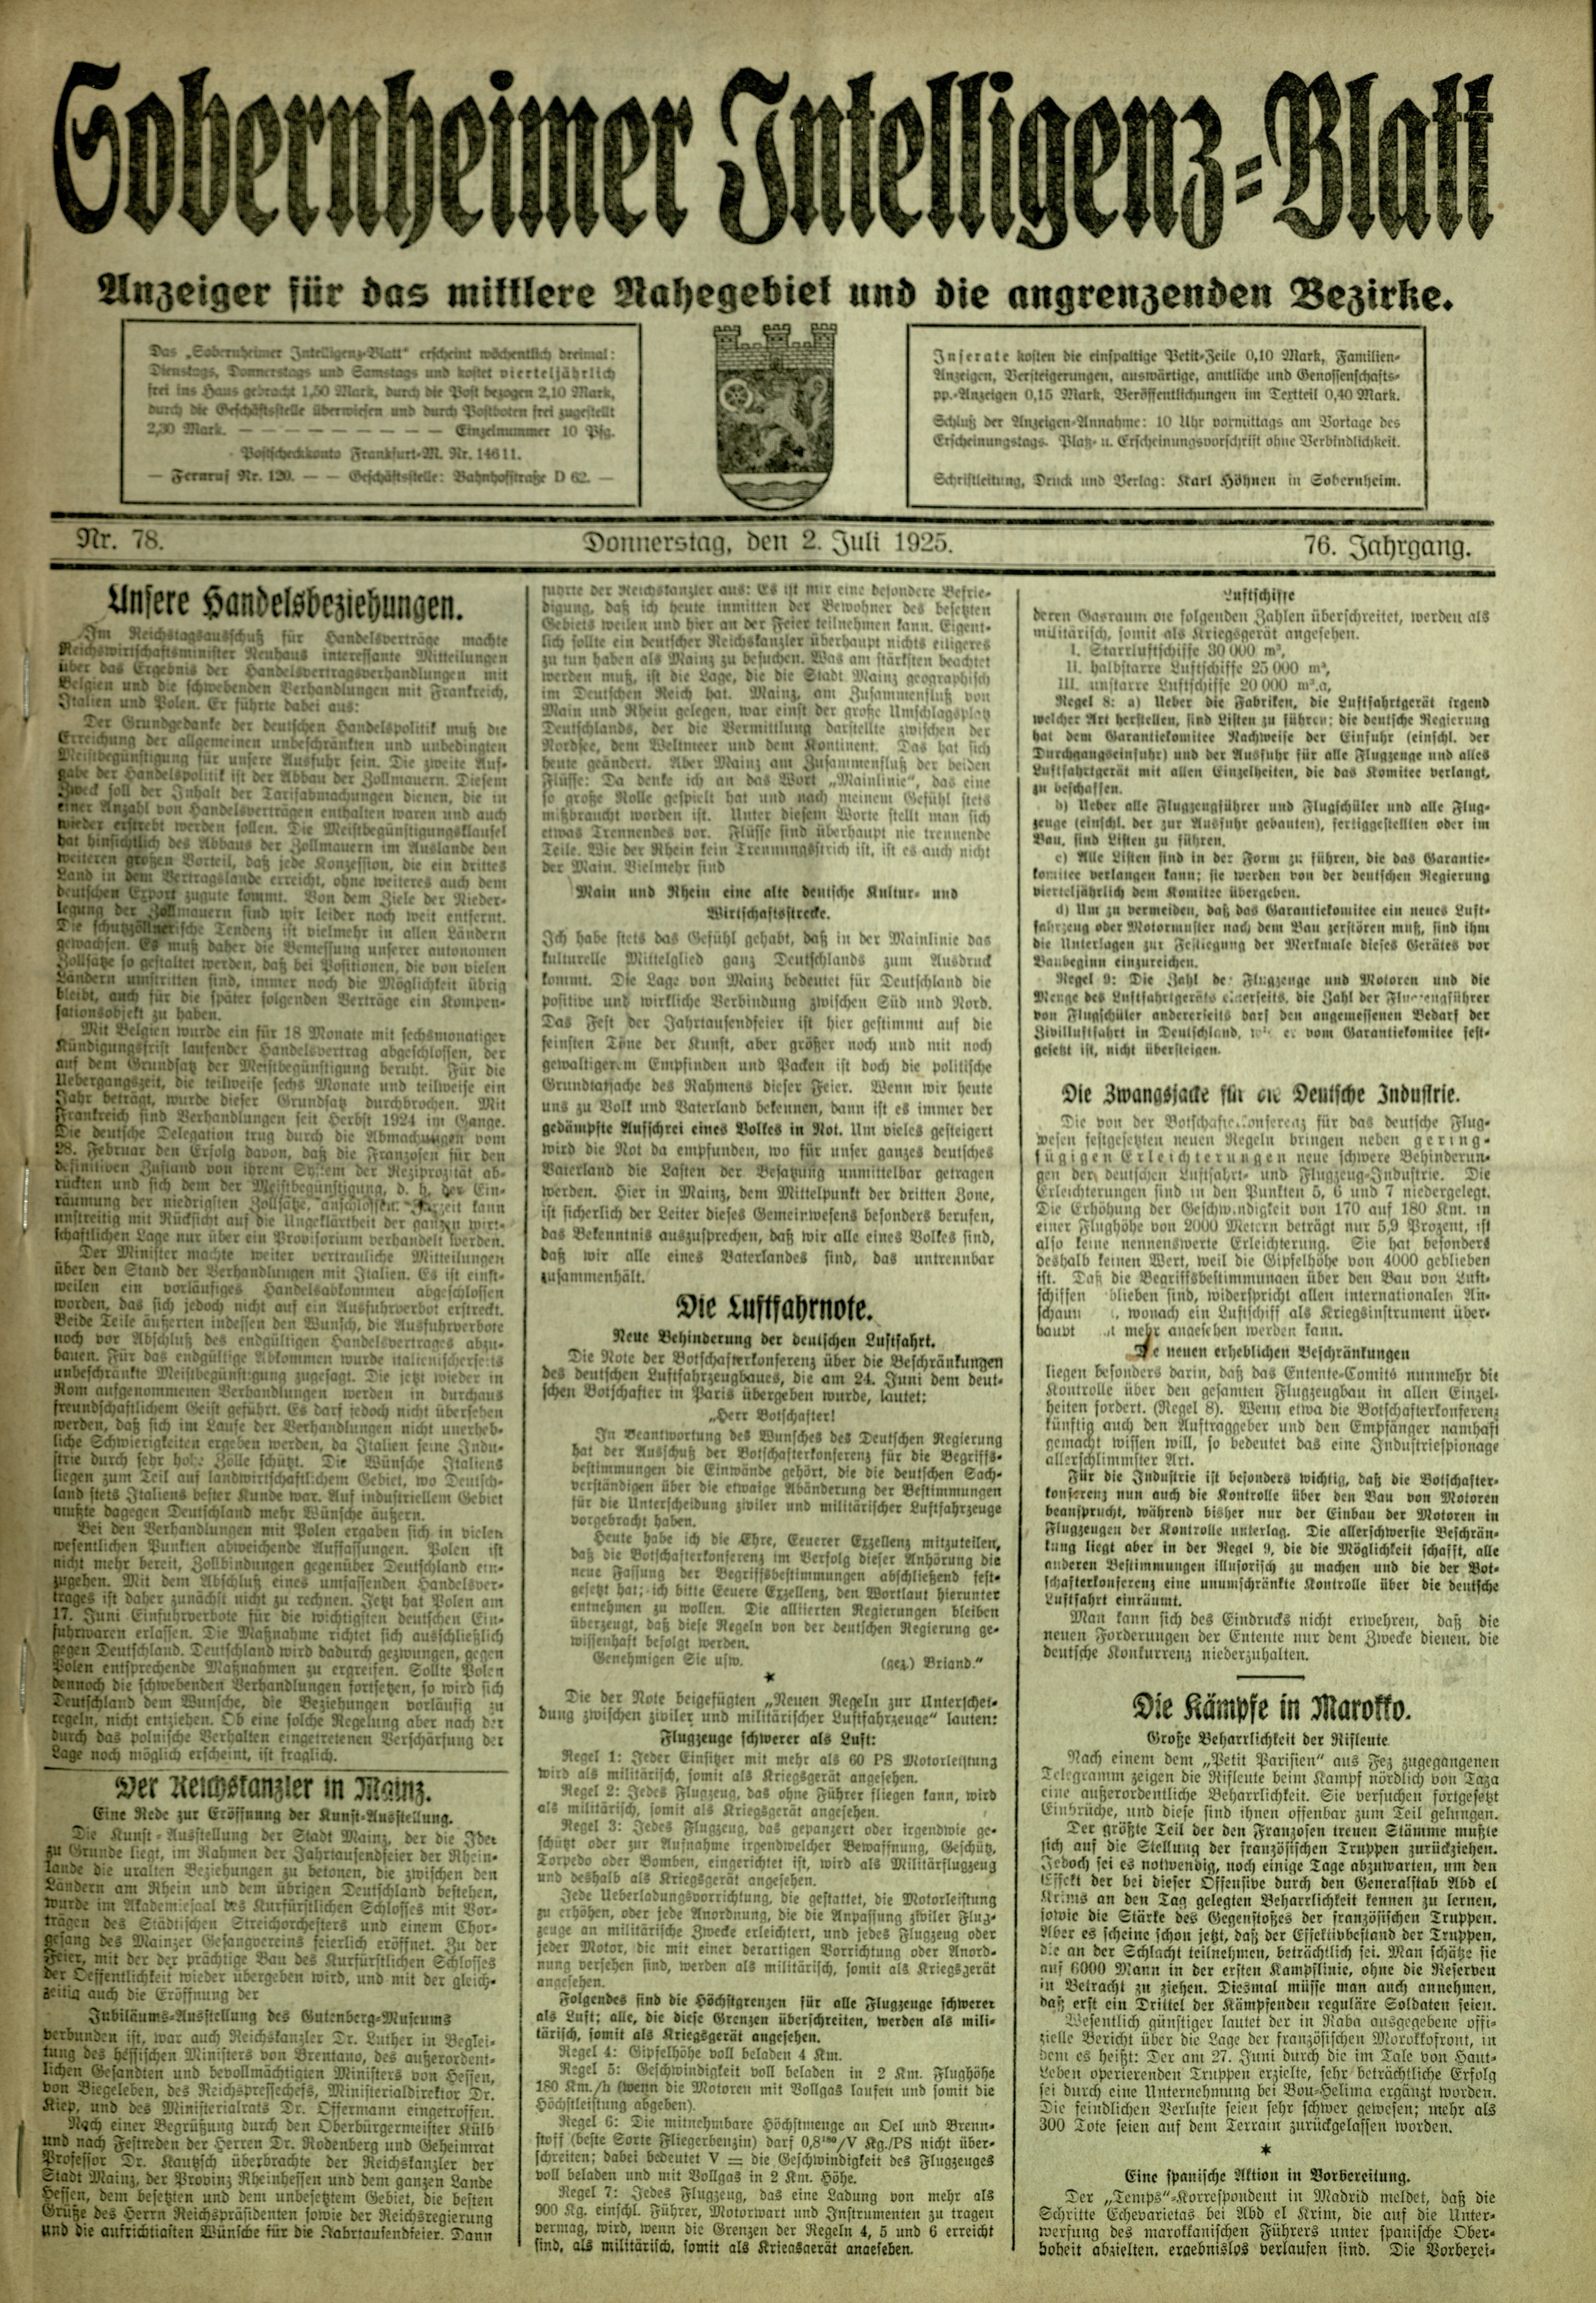 Zeitung: Sobernheimer Intelligenzblatt; Juli 1925, Jg. 76 Nr. 78 (Heimatmuseum Bad Sobernheim CC BY-NC-SA)